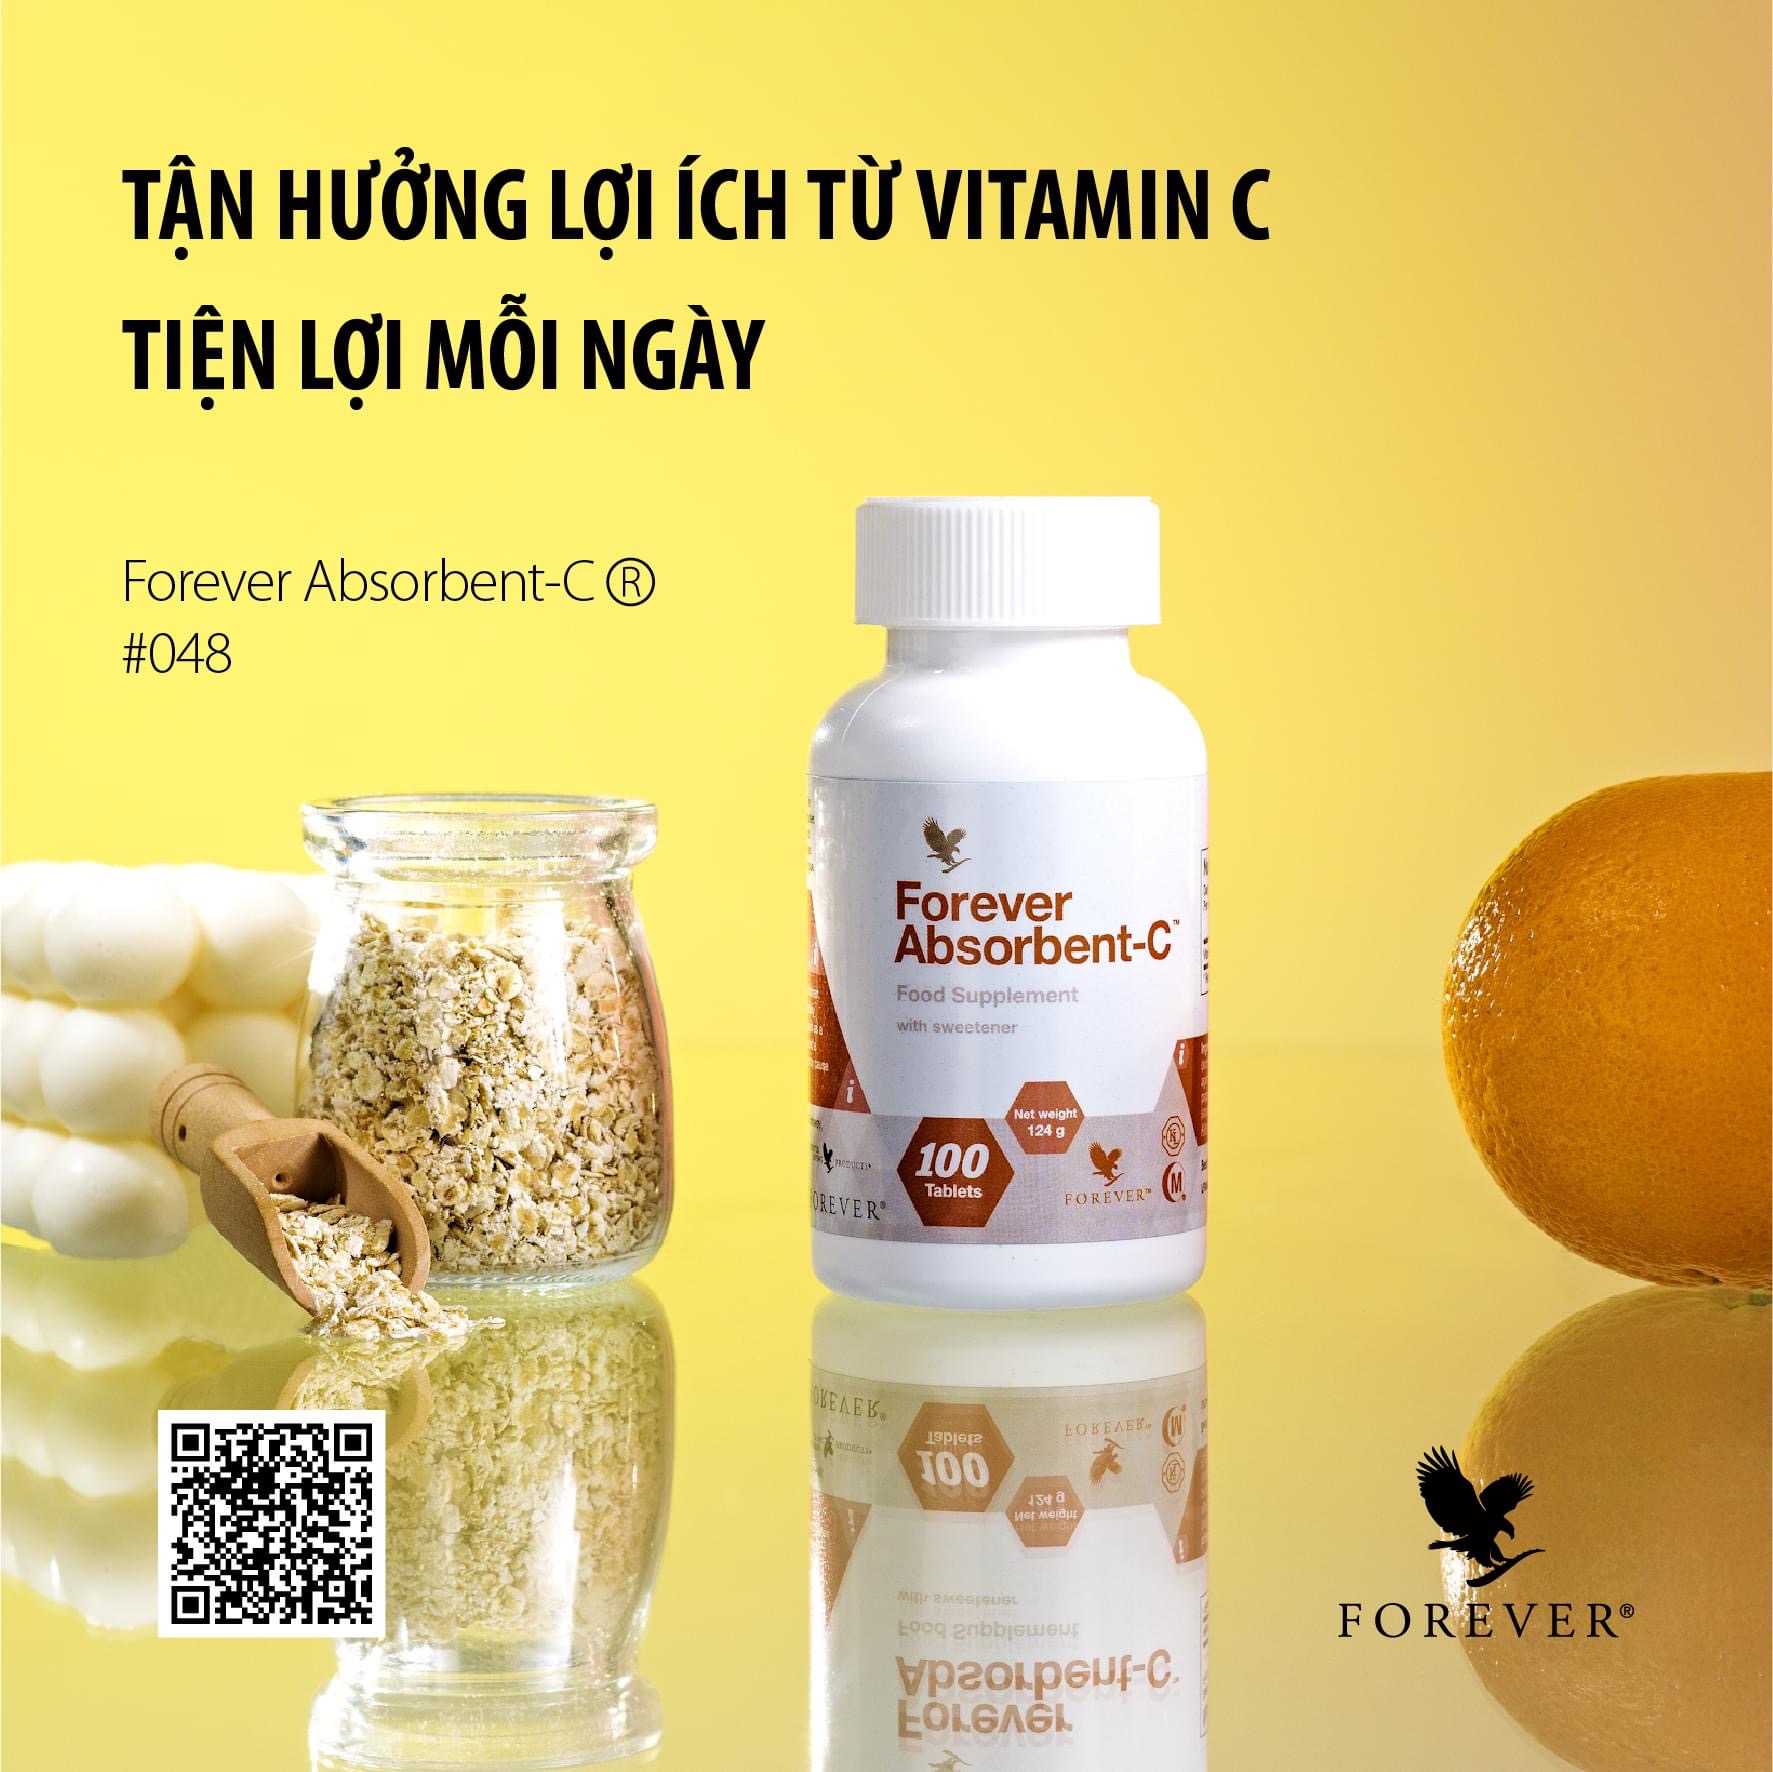 Forever Absorbent C 048 Flp : Tận hưởng lợi ích Từ Vitamin C Tiện lợi mỗi ngày